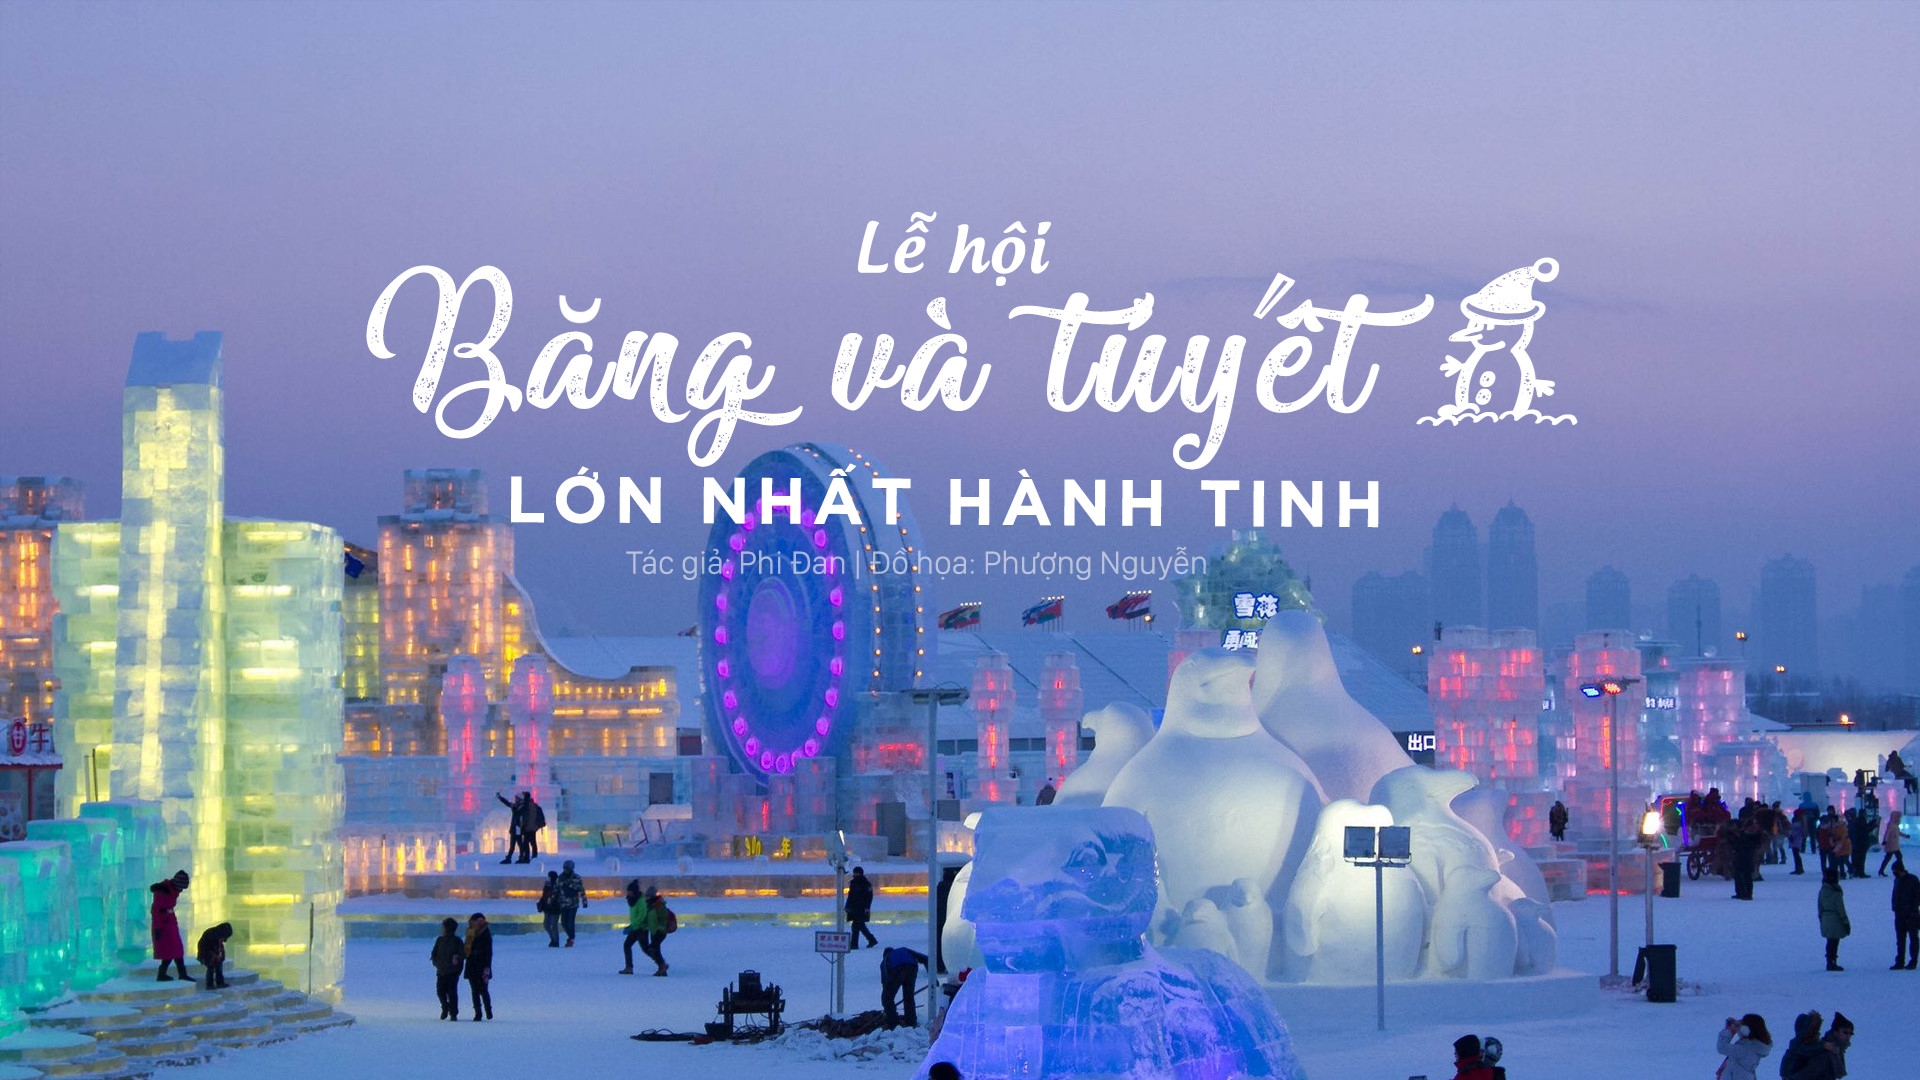 Le hoi Bang va Tuyet lon nhat hanh tinh tai Trung Quoc hinh anh 1